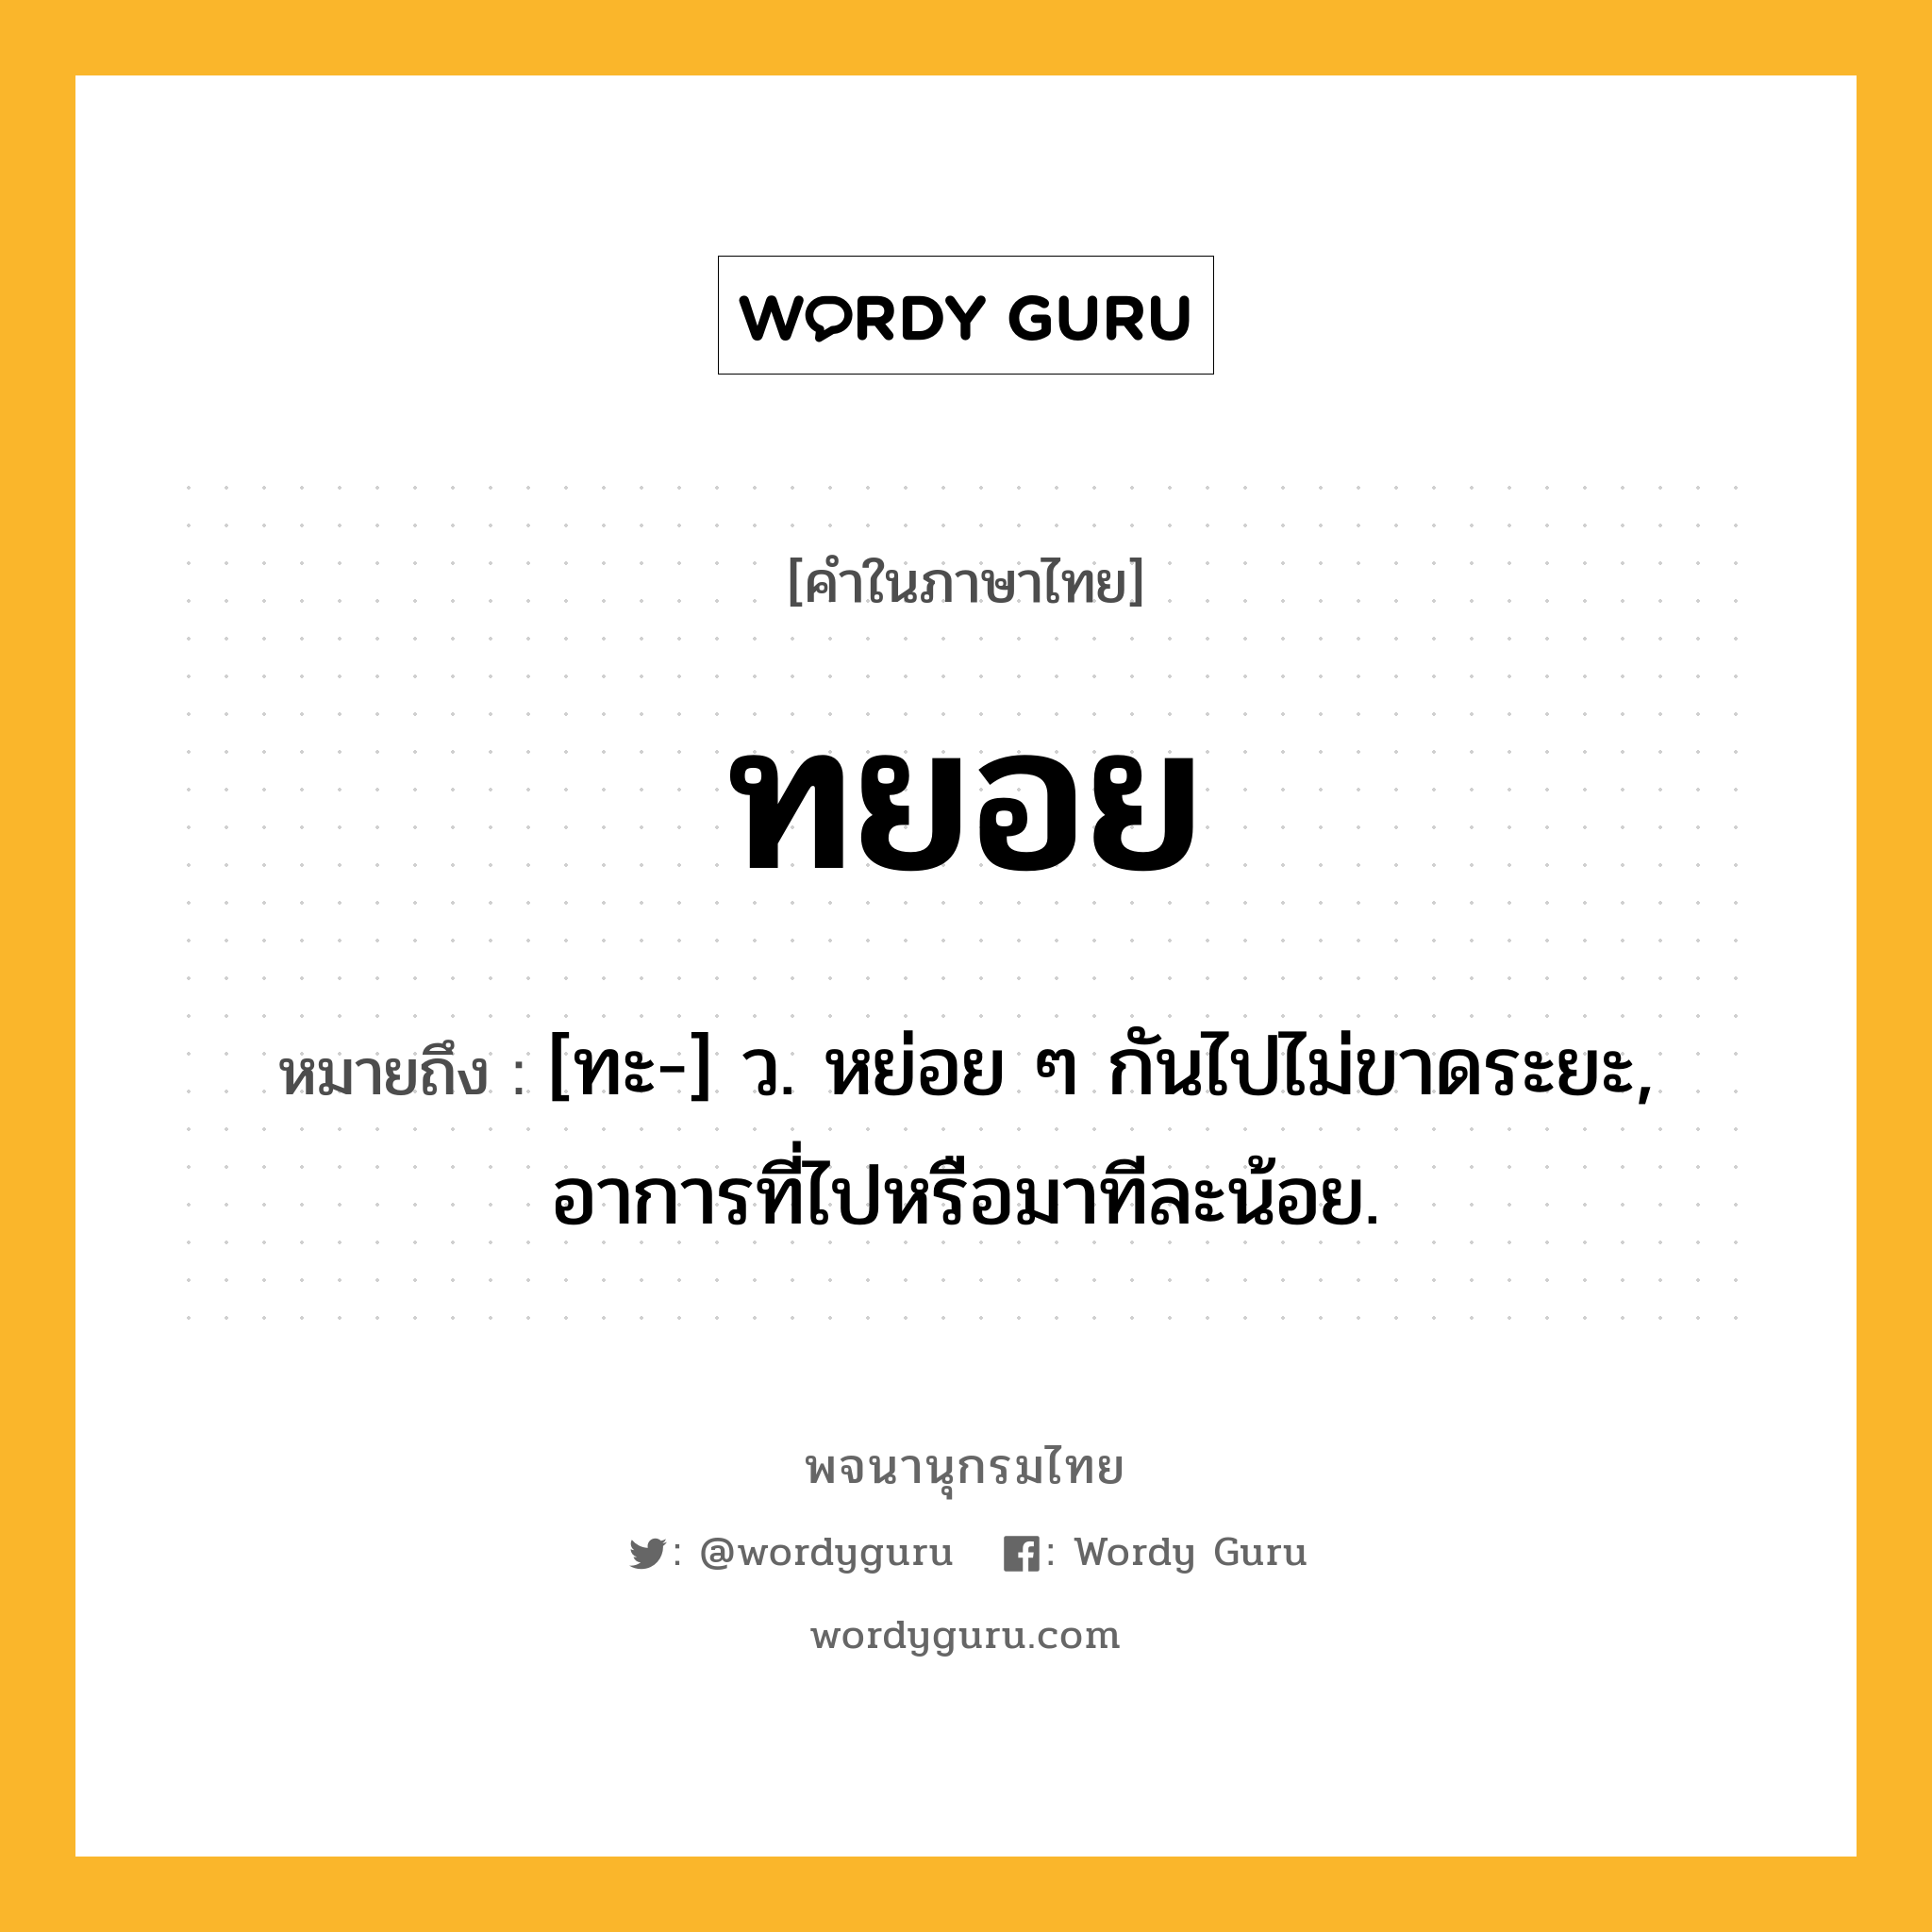 ทยอย หมายถึงอะไร?, คำในภาษาไทย ทยอย หมายถึง [ทะ-] ว. หย่อย ๆ กันไปไม่ขาดระยะ, อาการที่ไปหรือมาทีละน้อย.